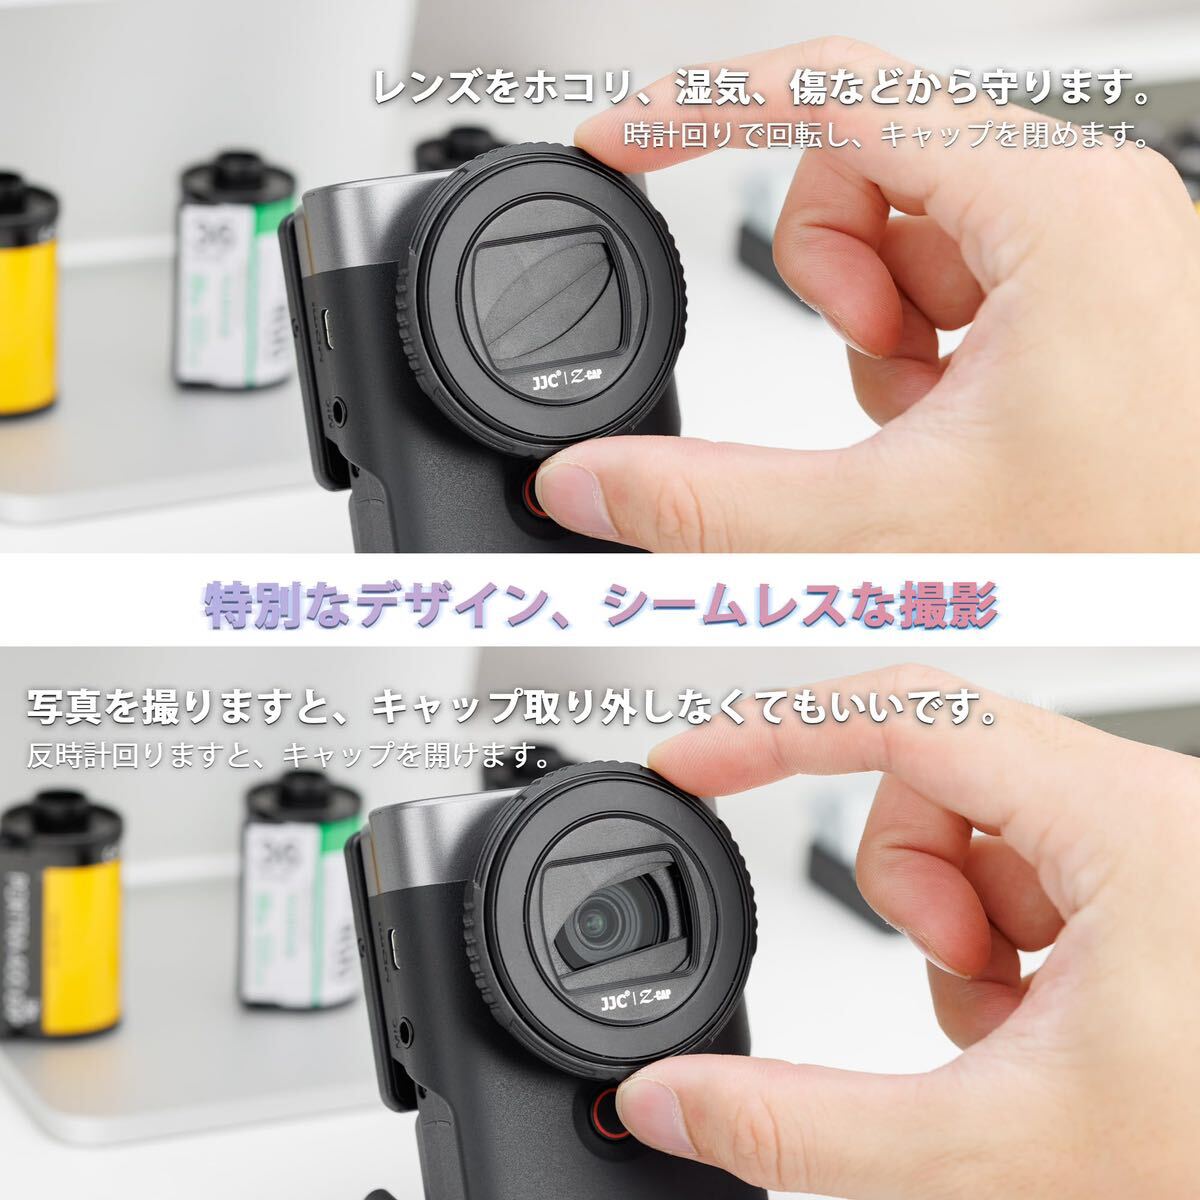 【送料無料】JJC レンズキャップ Canon PowerShot V10 PSV10 専用 カメラ対応 レンズカバー レンズ保護 防塵 キズ防止 携帯便利(A142)